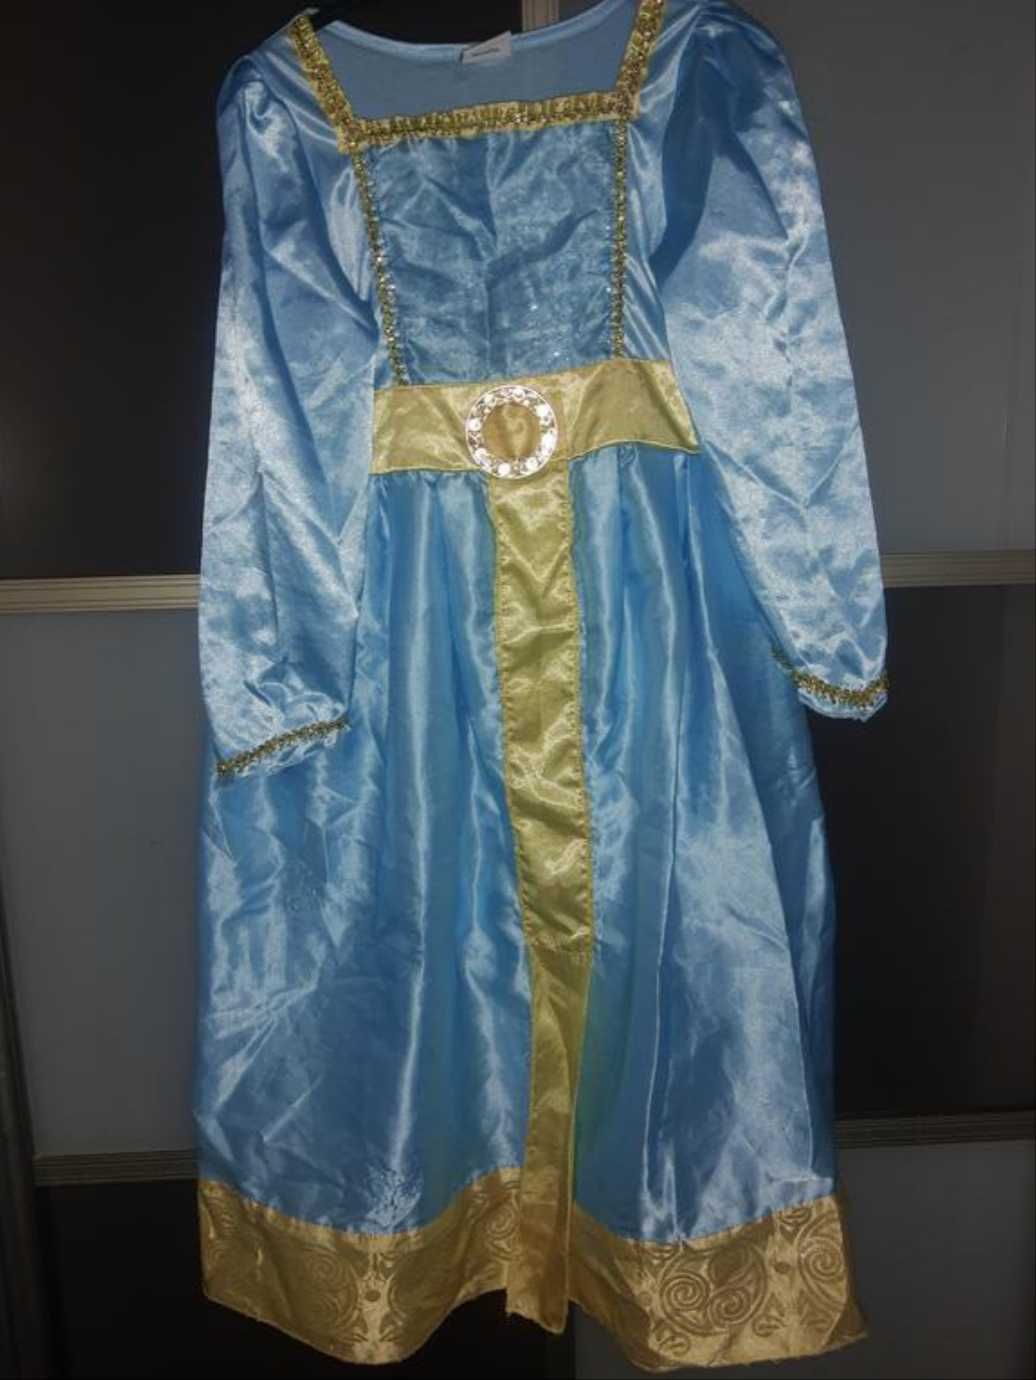 Suknię strój karnawałową Meridy Brave, Disney.